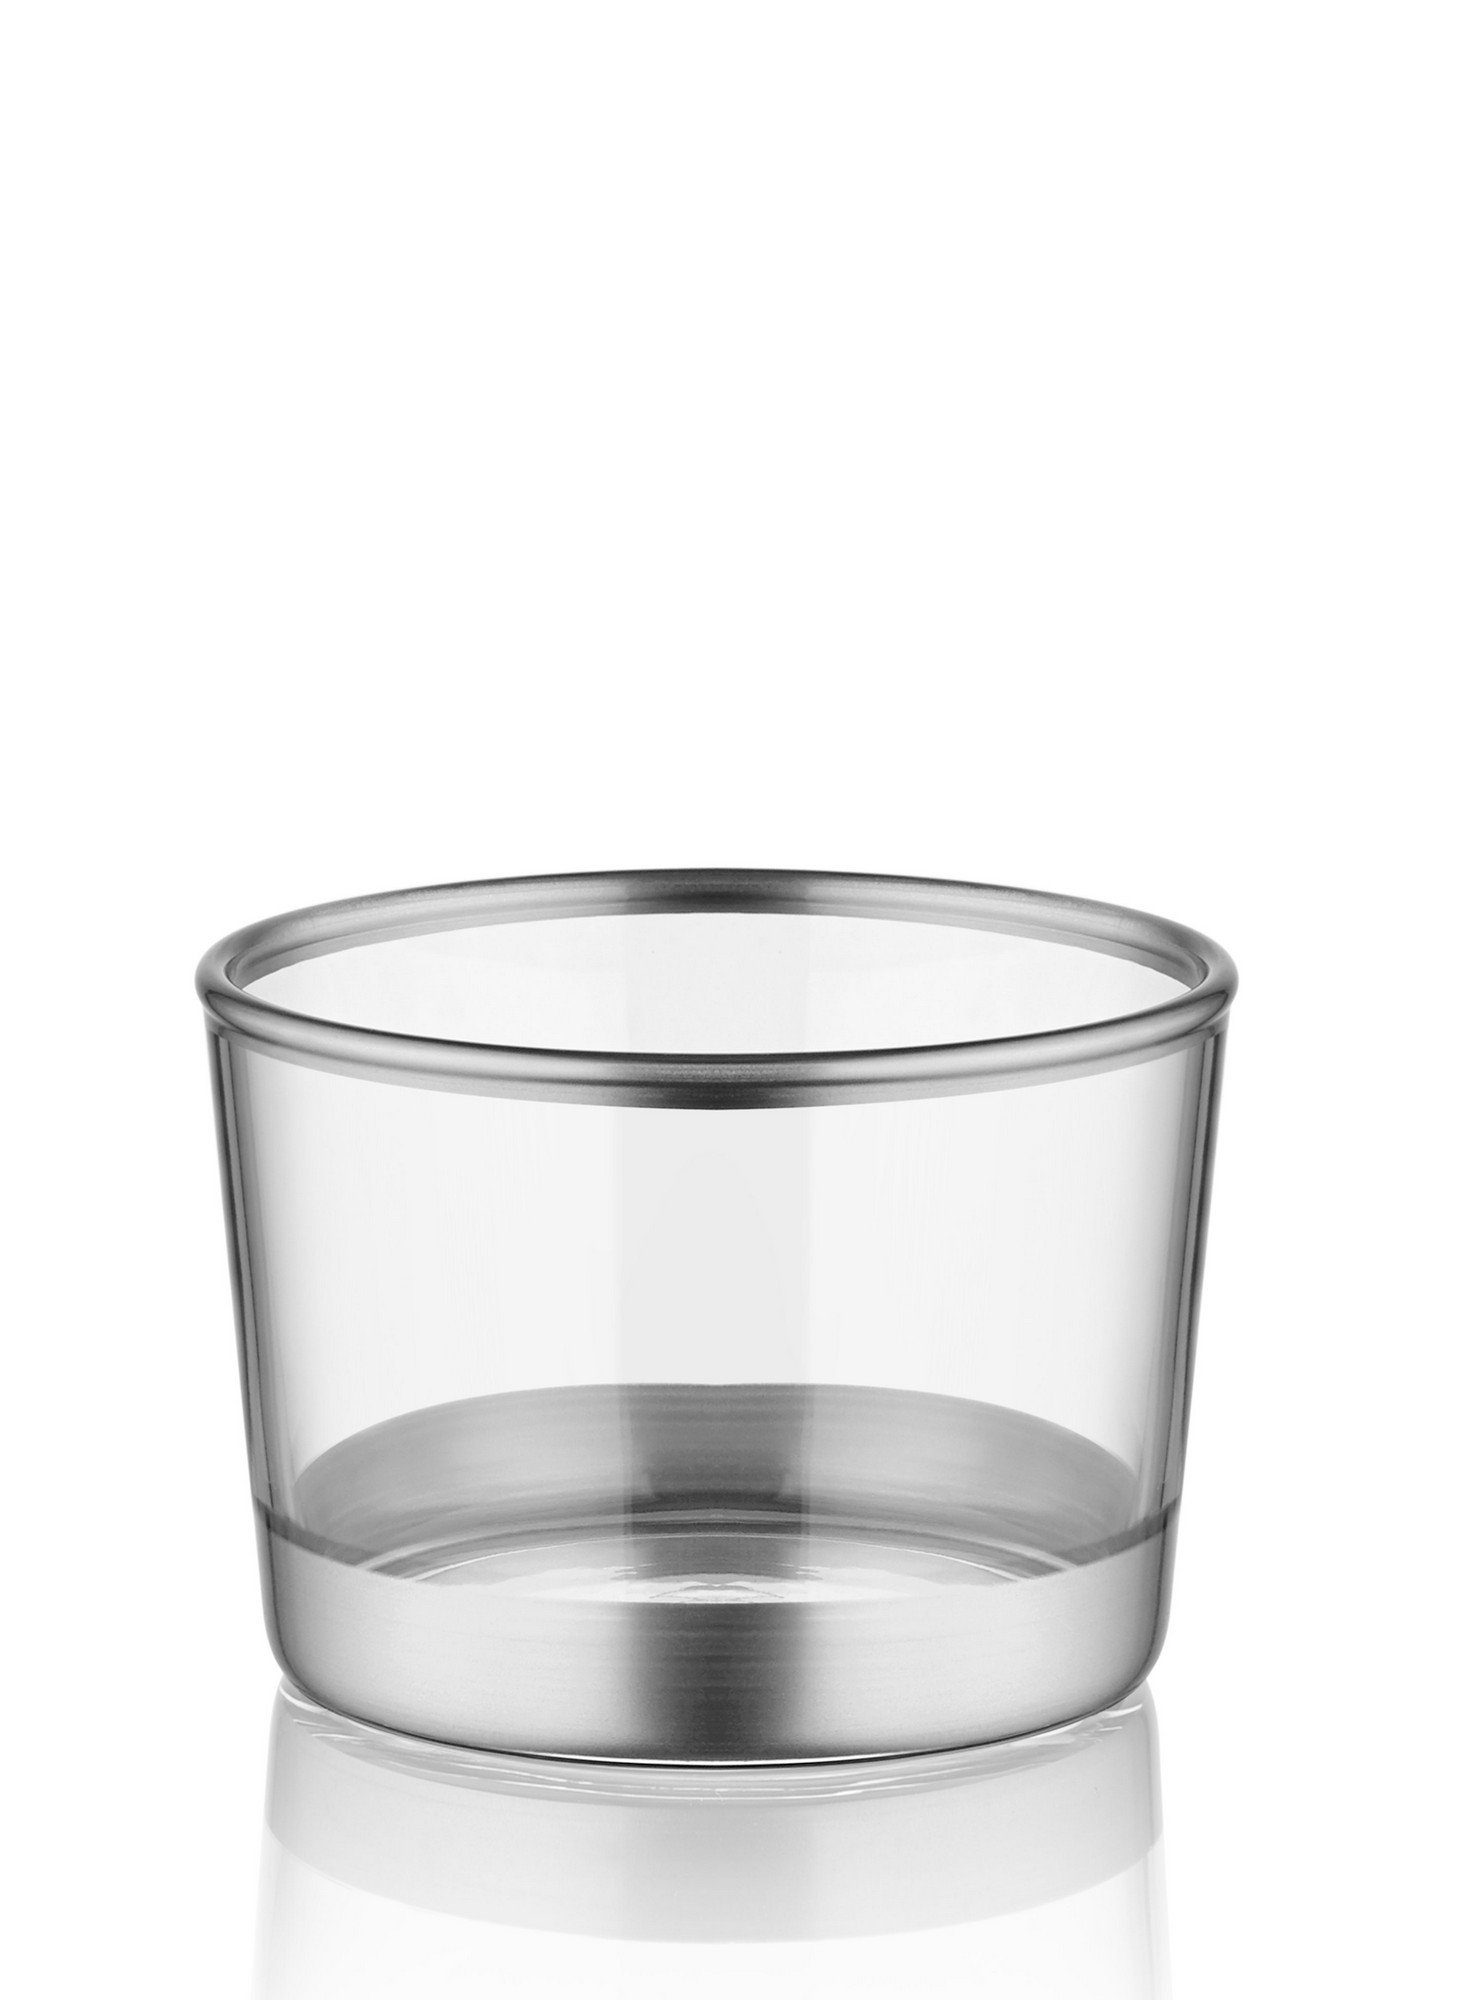 Schüsseln, Concept 100% Silber, Glas Schüssel TMA4725, Hermia